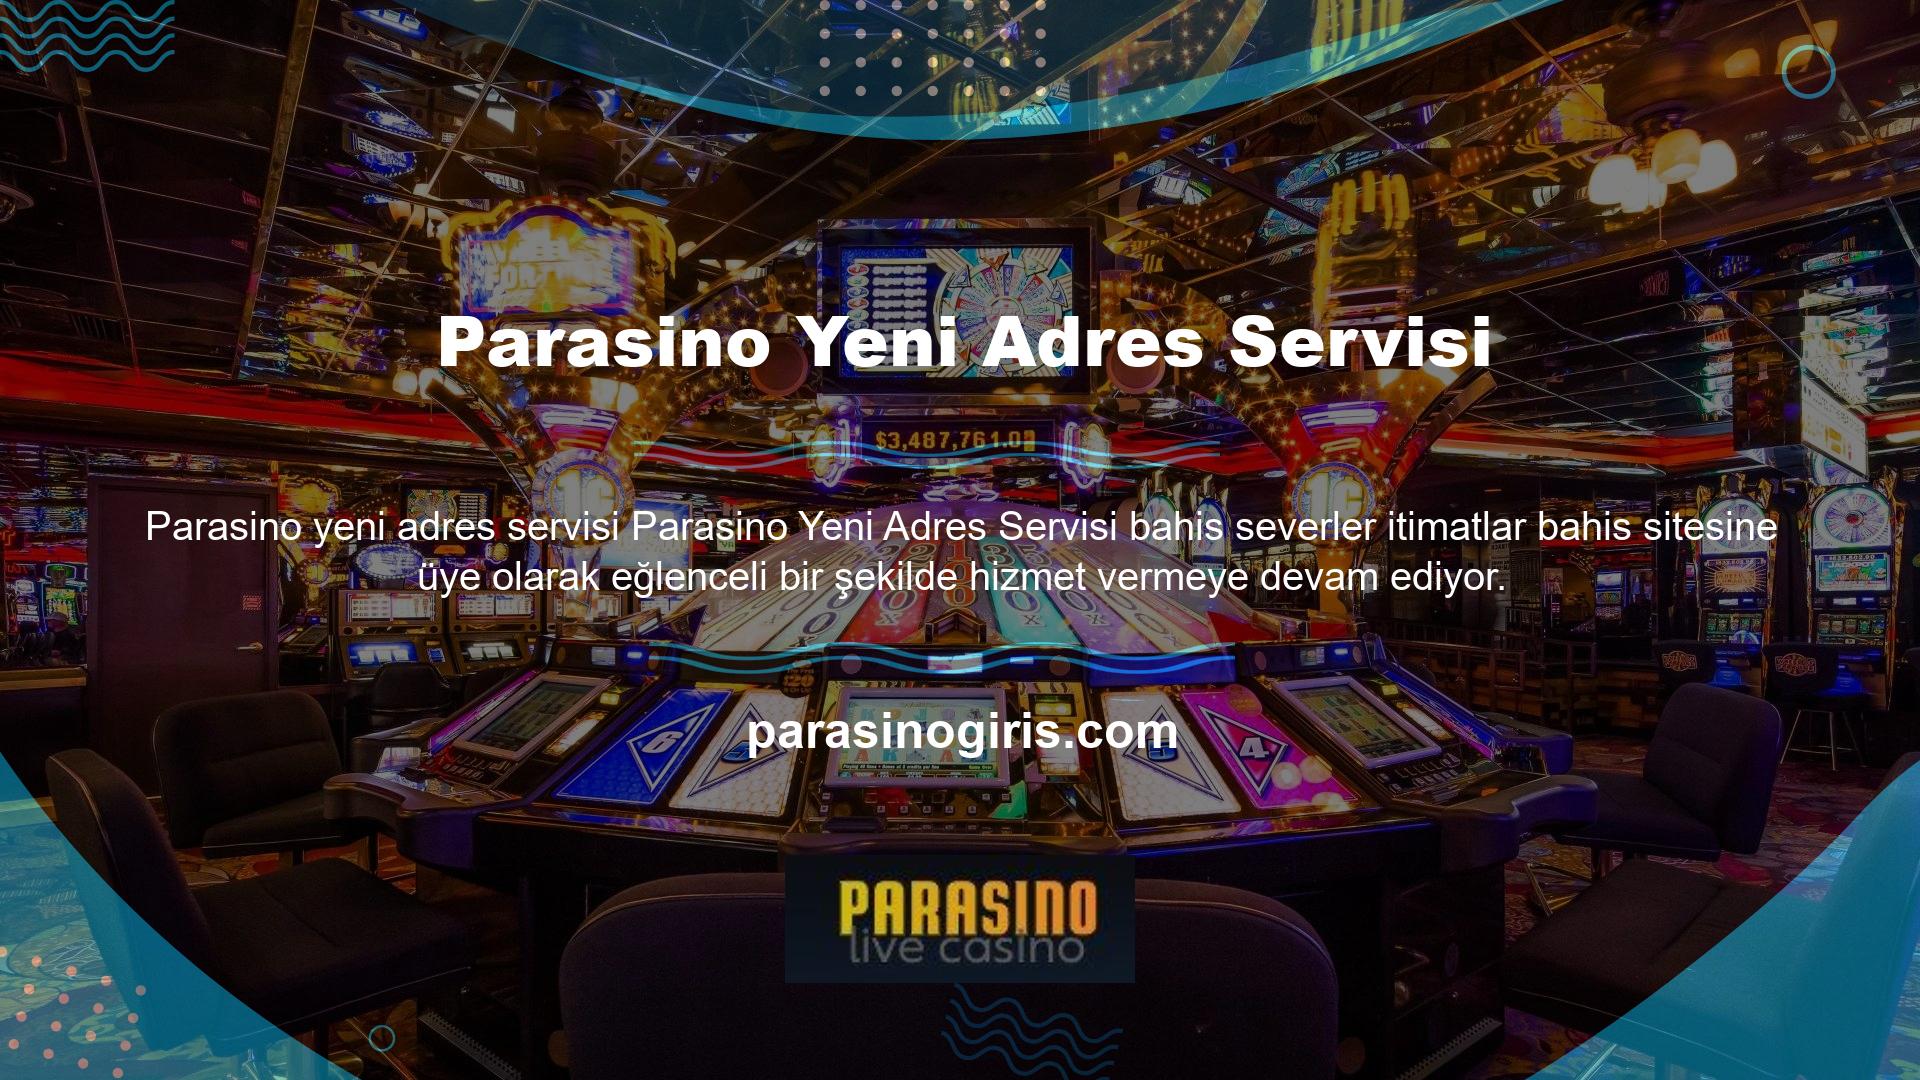 En popüler bahis sitelerinden biri olan Parasino artık kullanıcılarına yeni bir adresle hizmet veriyor ve adres değiştiğinde hizmeti güncelliyor